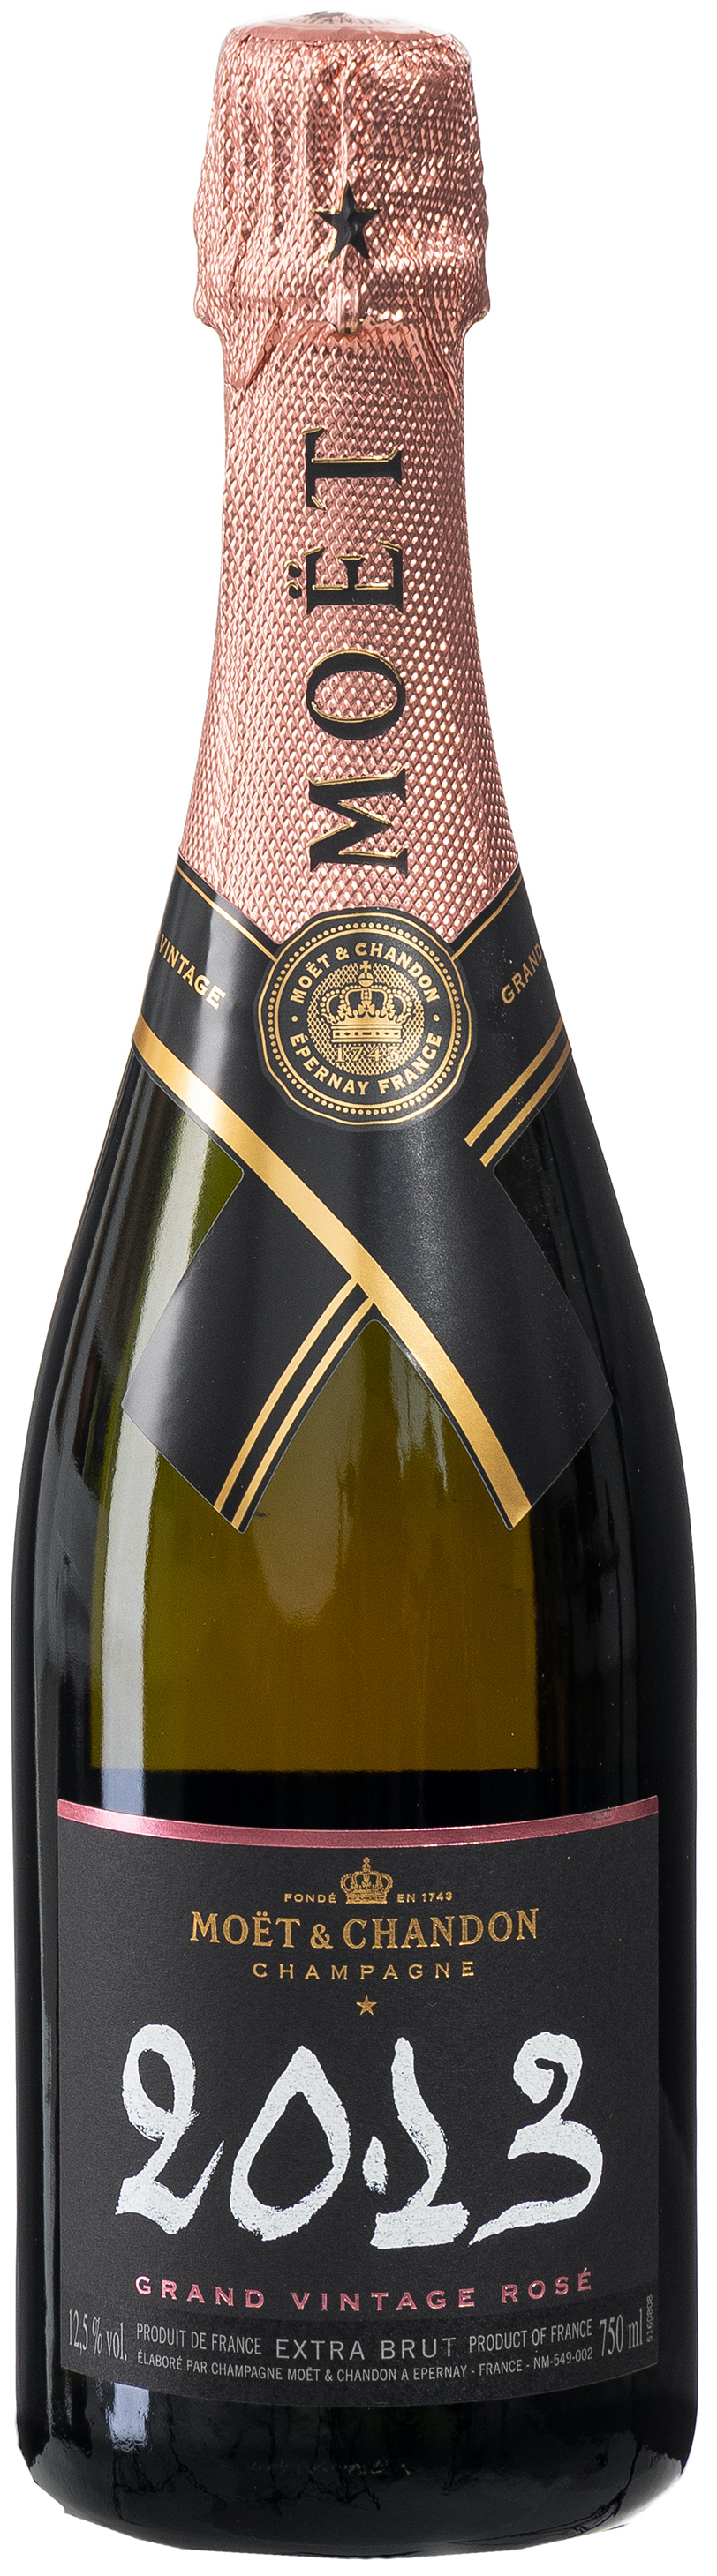 Moët & Chandon Grand Vintage Rosé 2013 Champagner 12,5% vol. 0,75L